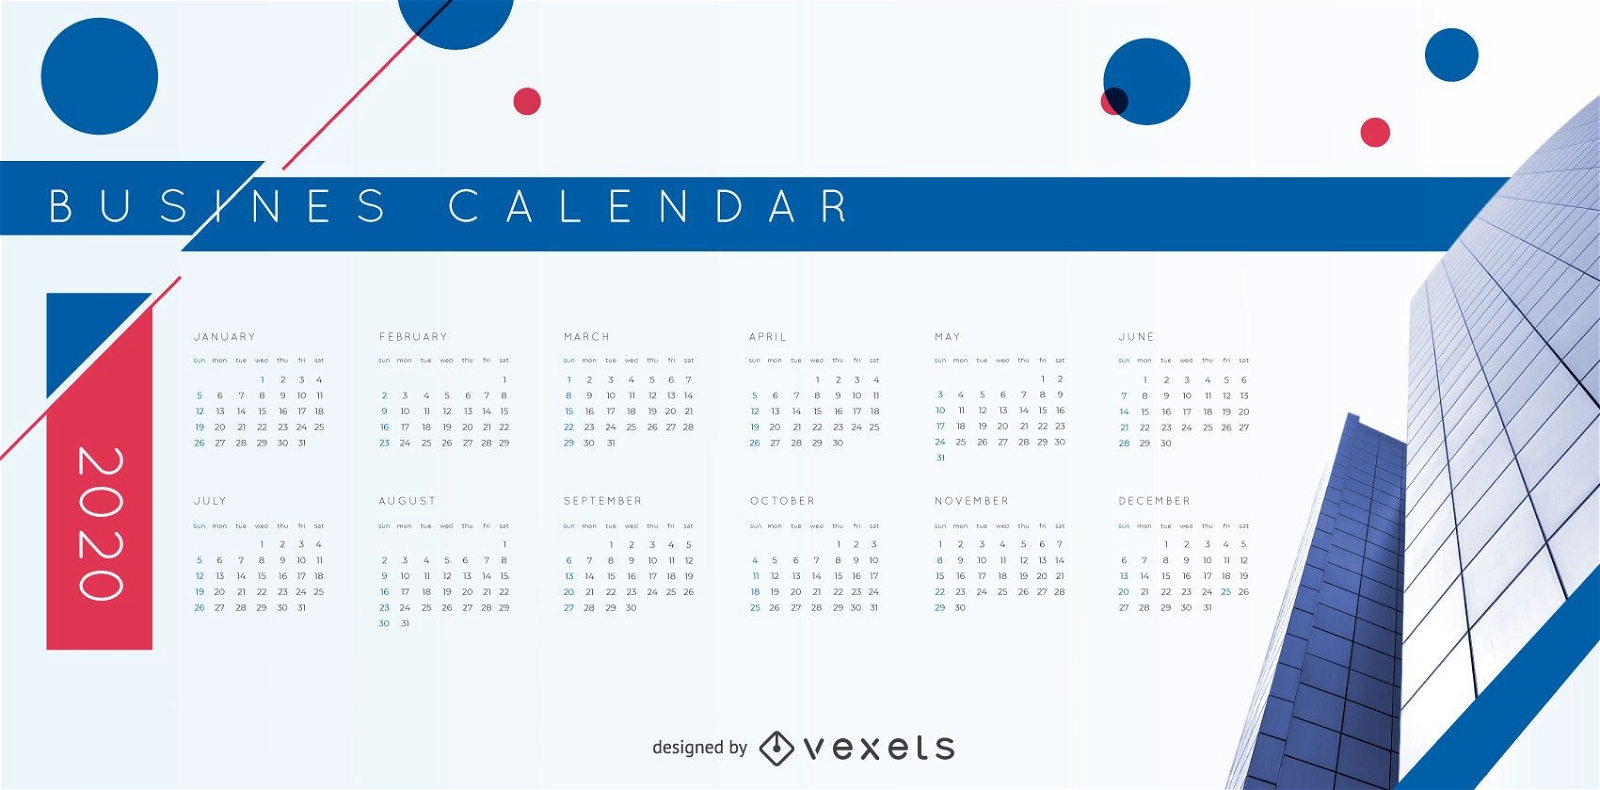 Business Calendar 2020 Vector Design